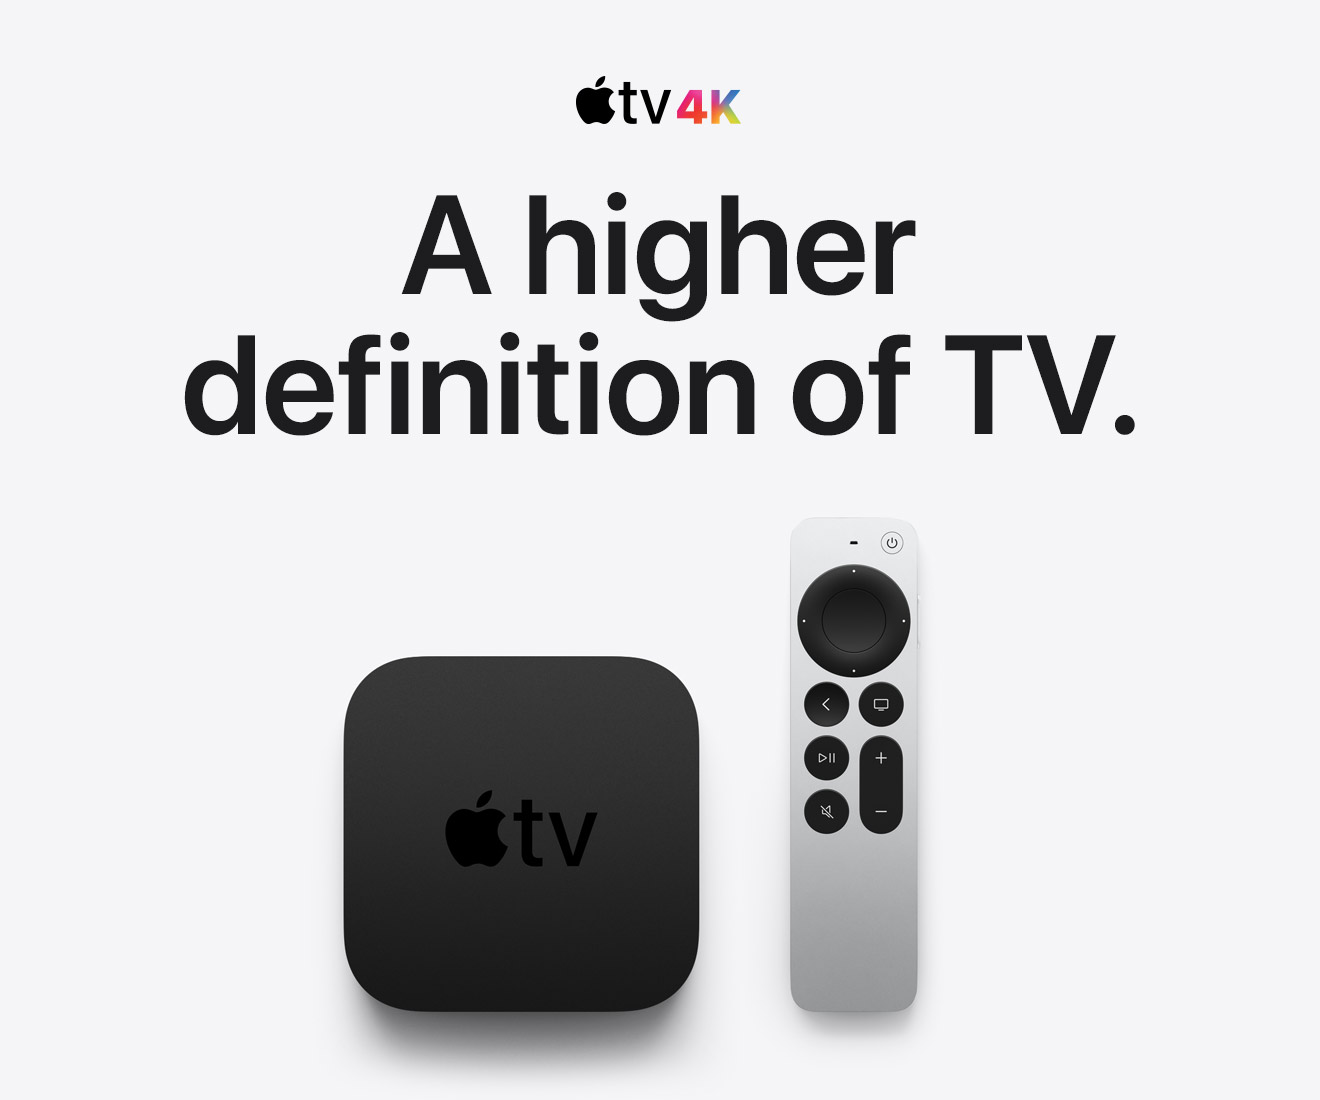 Apple TV 4K A higher definition of TV.